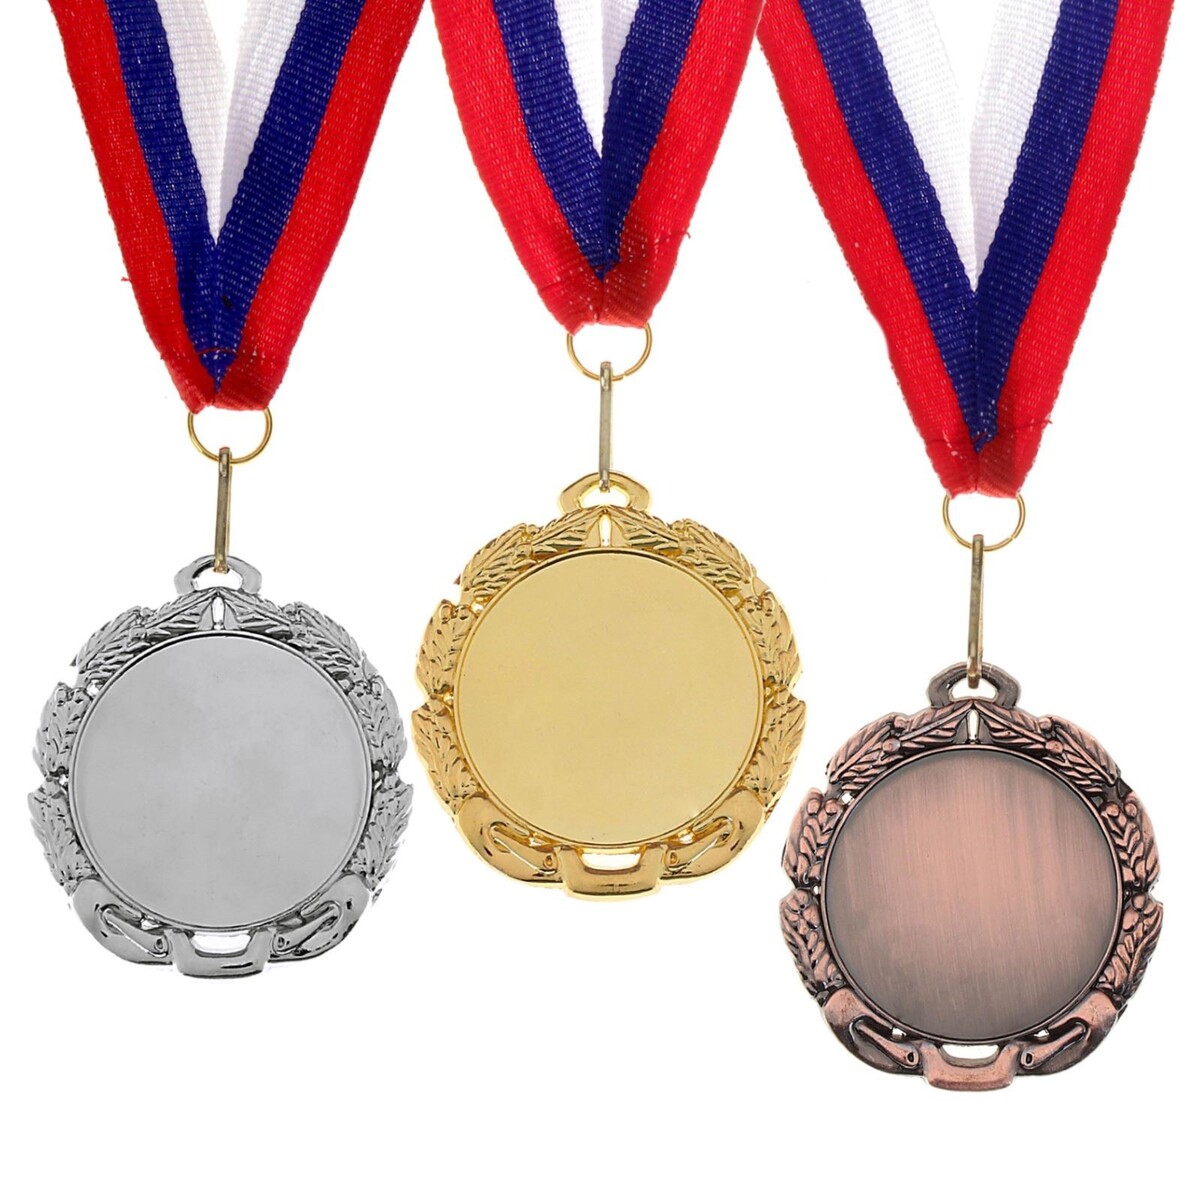 Медаль под нанесение 009 диам 7 см. цвет бронз. с лентой медаль под нанесение 009 диам 7 см сер с лентой